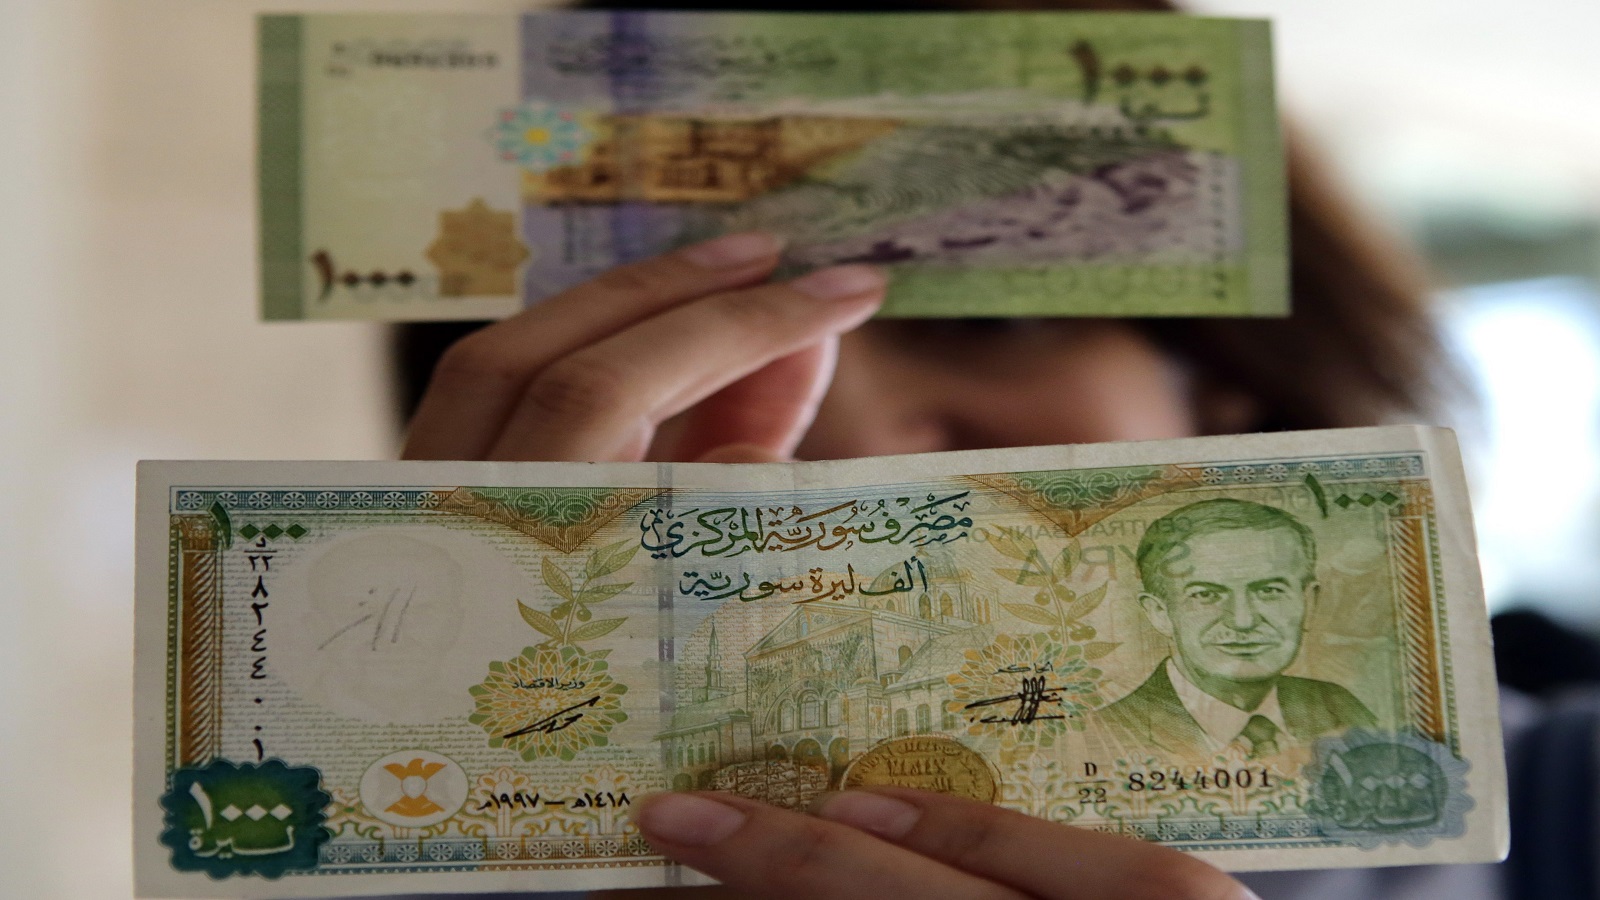 سوريا: "1000" ليرة جديدة..بلا صورة ولا تغطية